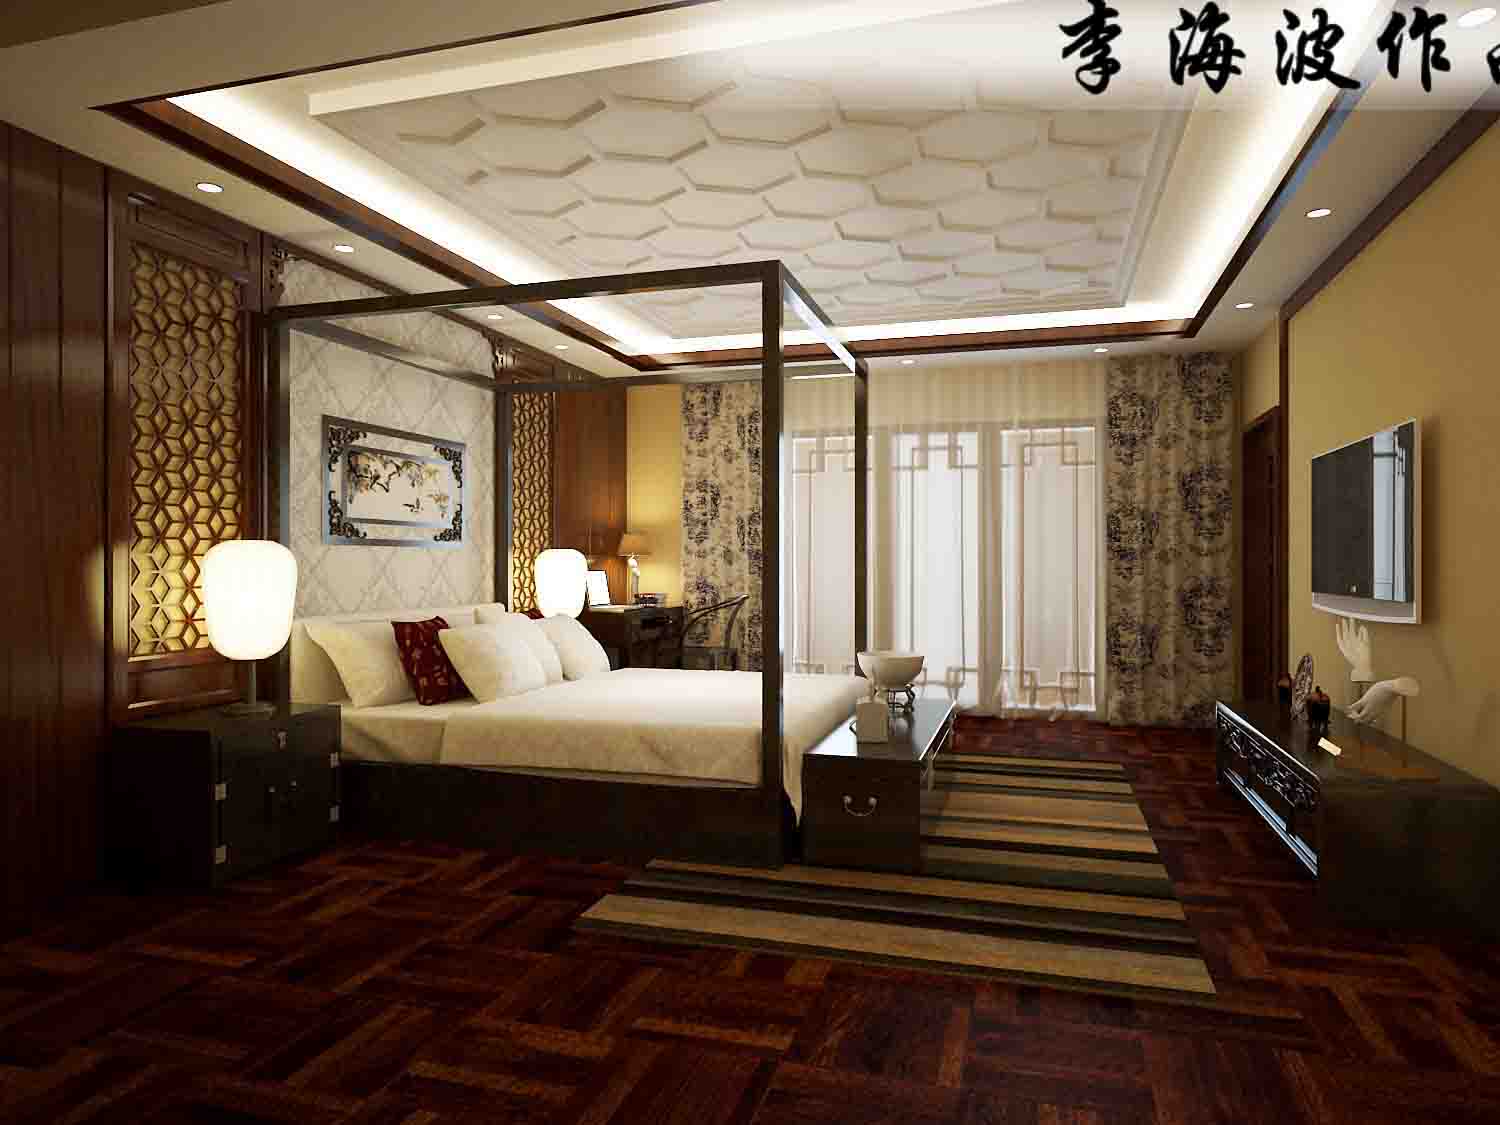 别墅 中式 卧室图片来自北京生活家健康家居馆赵庚新在东郡府230平米独栋别墅中式风格的分享